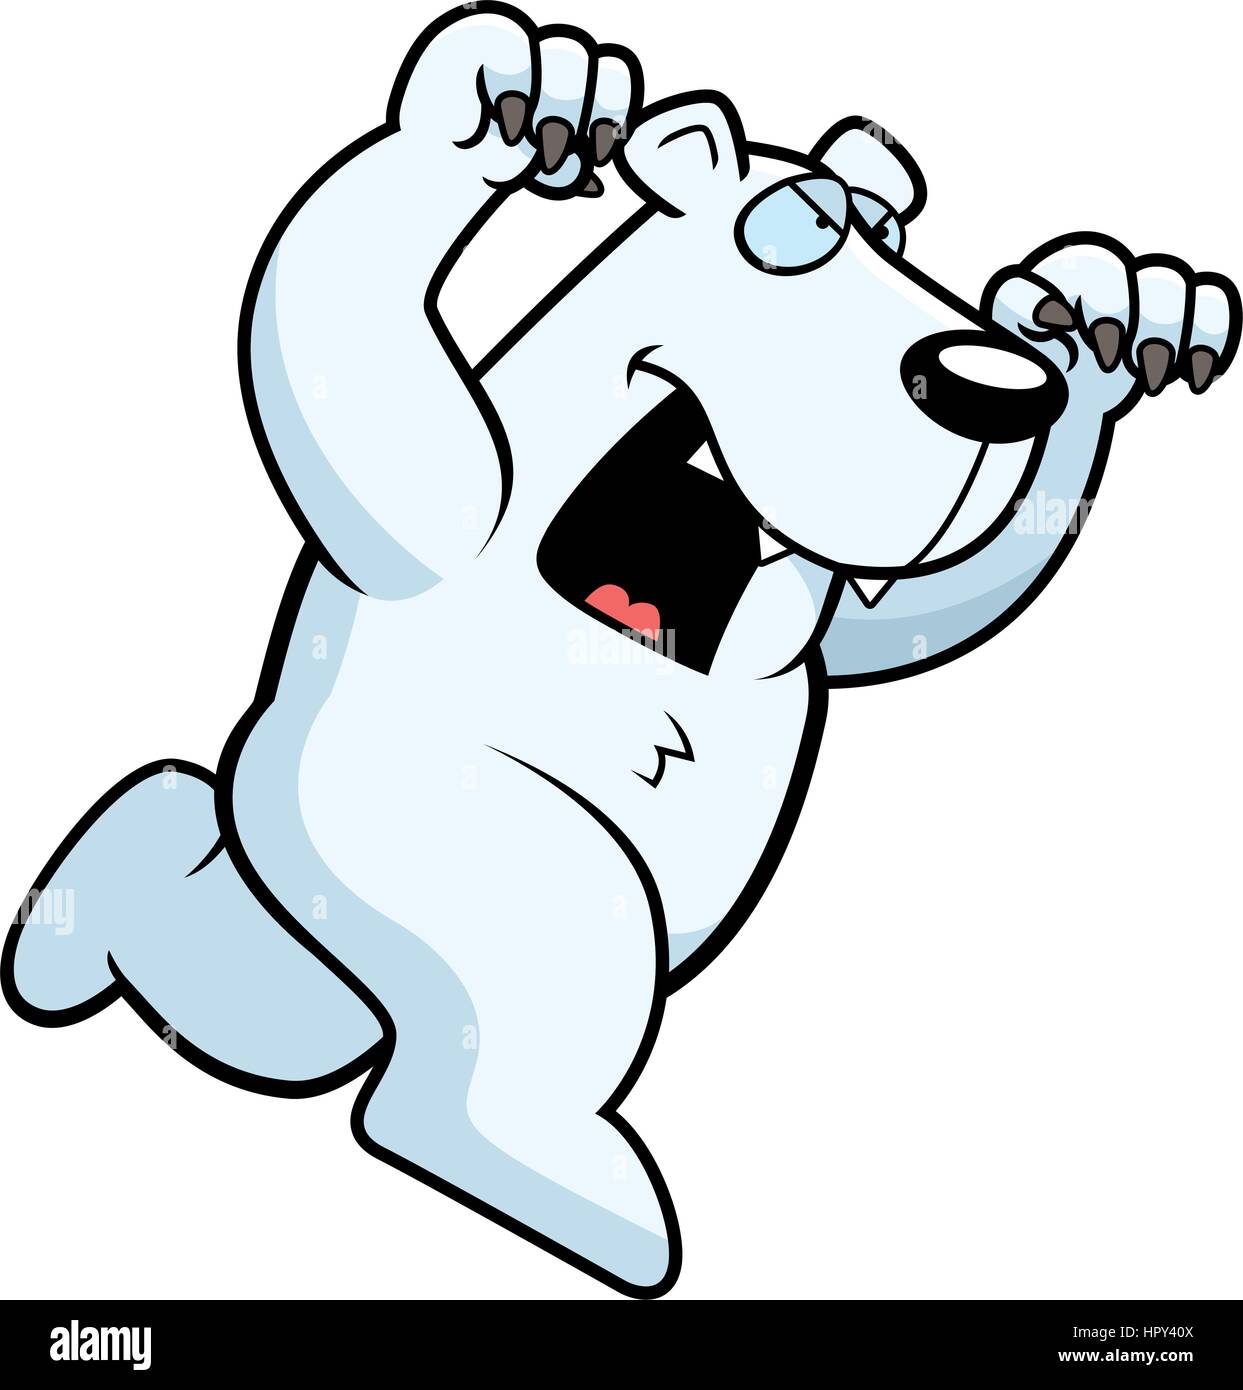 Un cartoon orso polare in esecuzione per attaccare con artigli fuori. Illustrazione Vettoriale